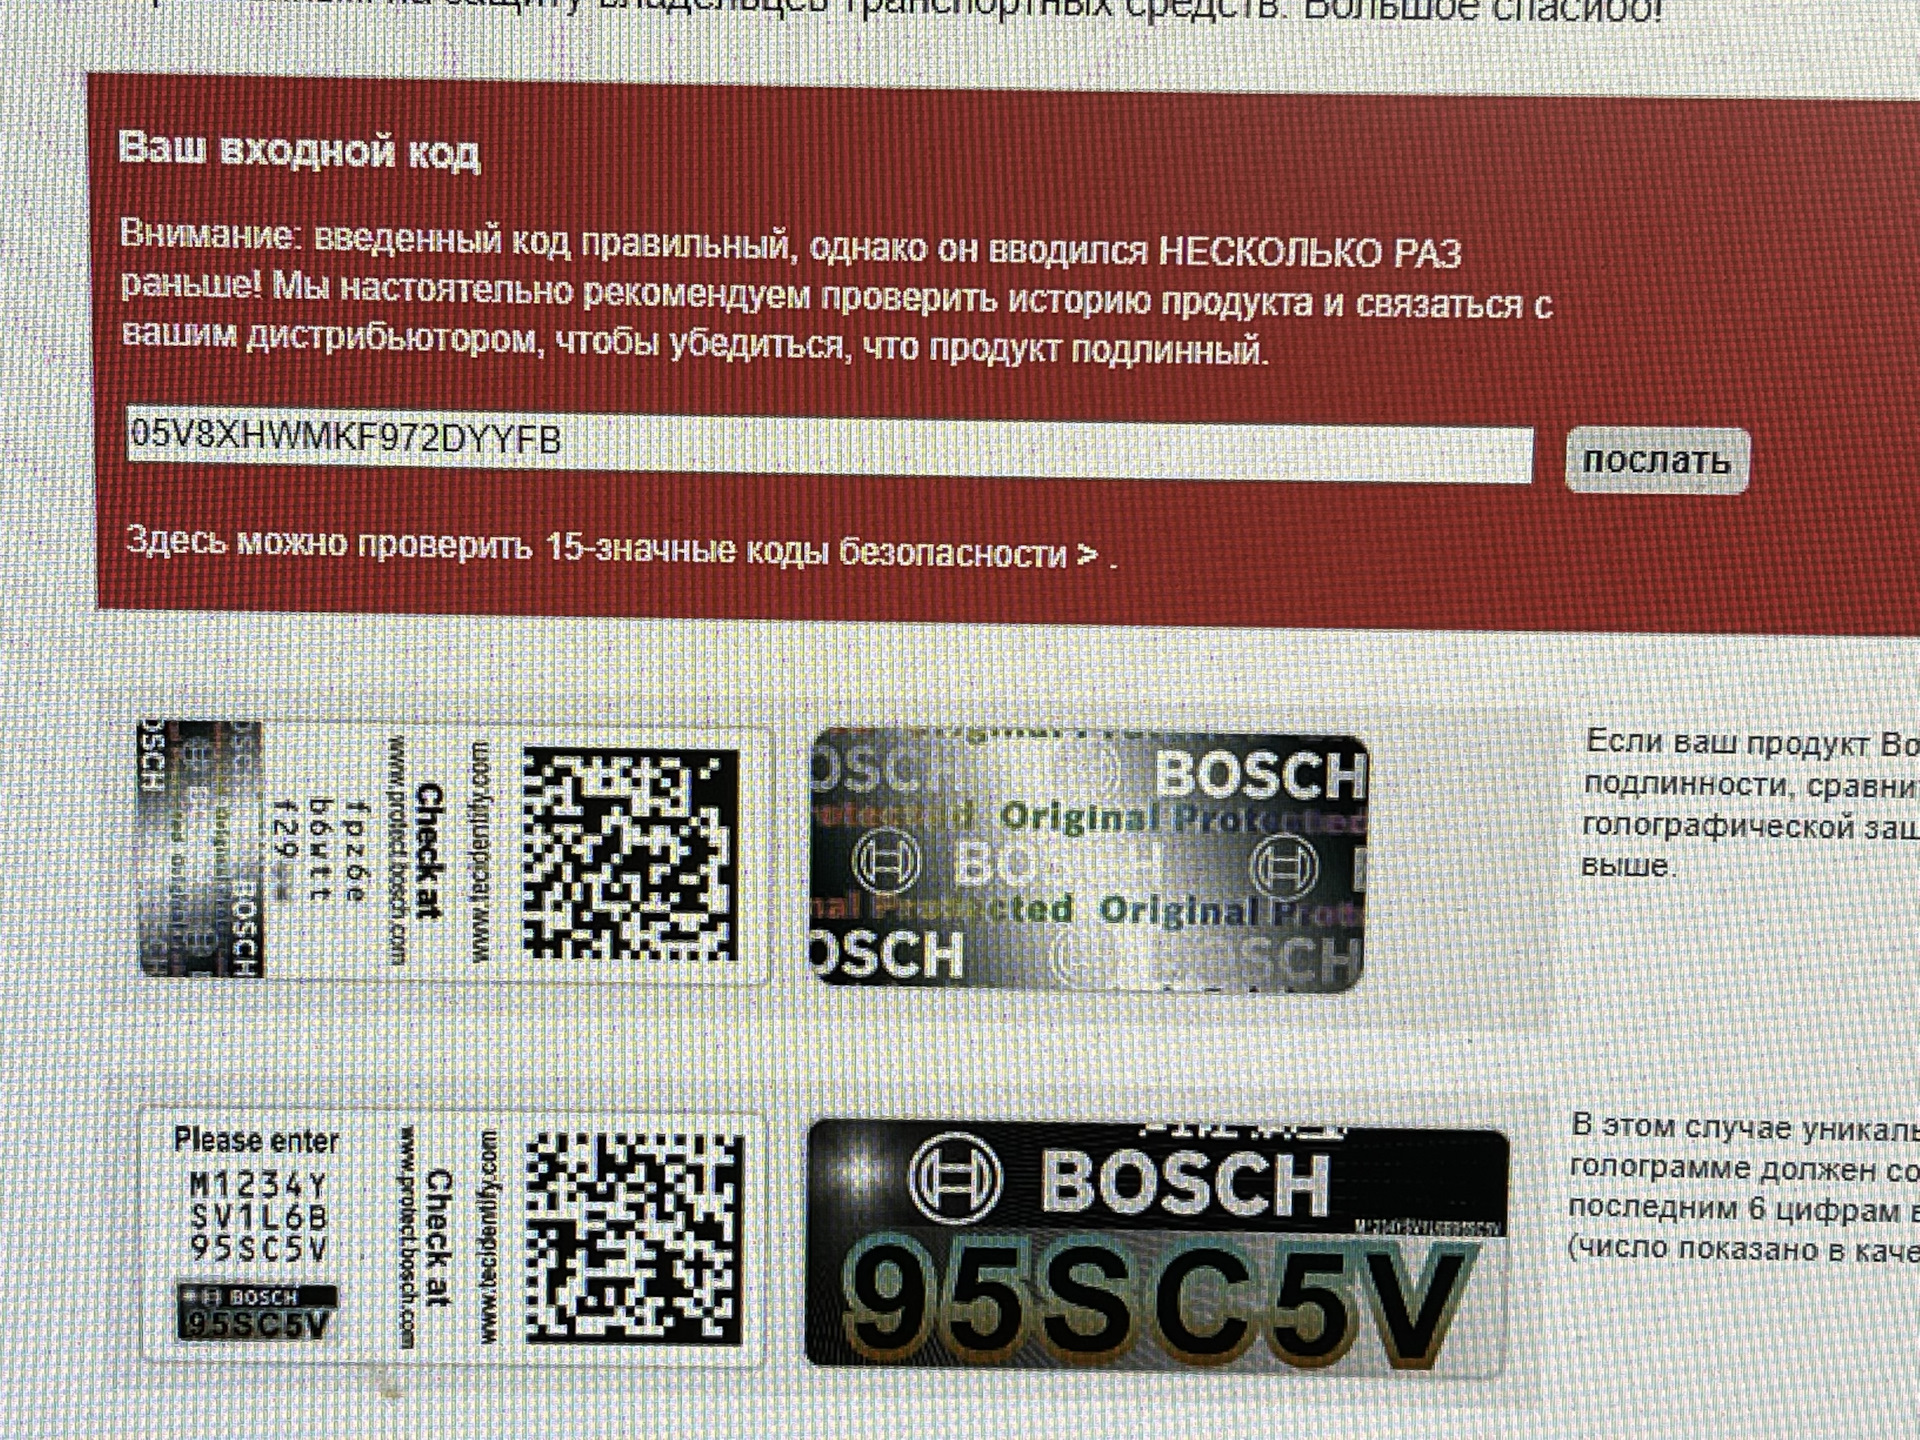 Проверка оригинальности по qr коду. Коды форсунок Bosch. Bosch проверка подлинности. Ima код форсунки Bosch. Проверочный код на оригинальность форсунка Bosch.